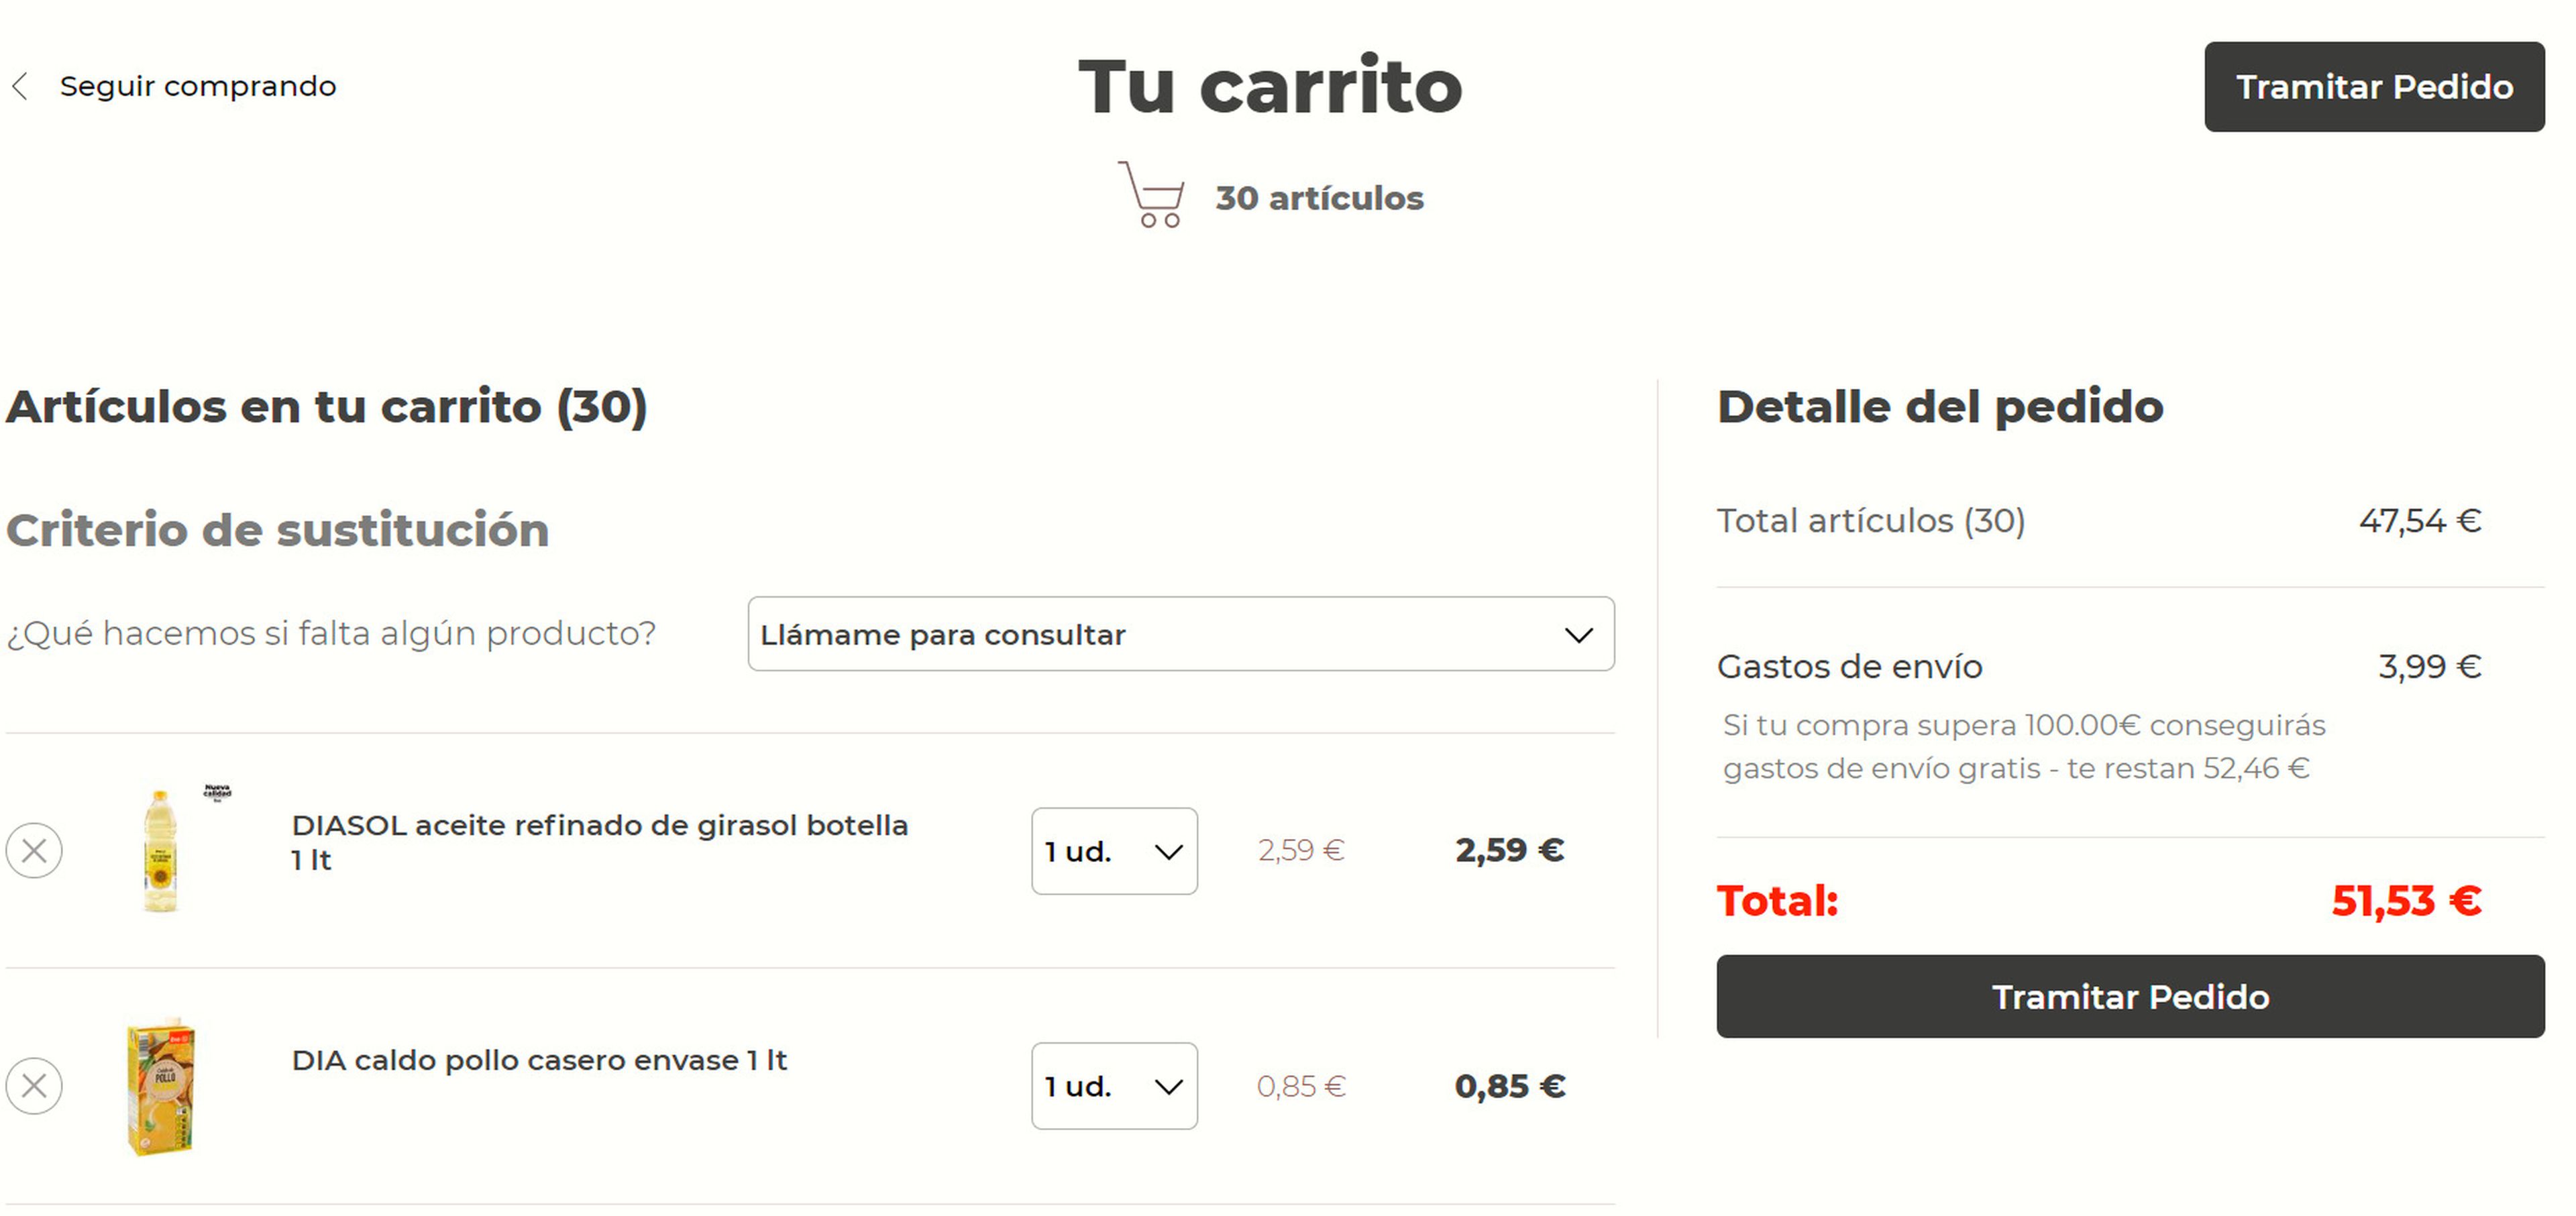 Comprando los 30 productos del Carrefour en el Dia, la compra tuvo un importe de 47,54 euros